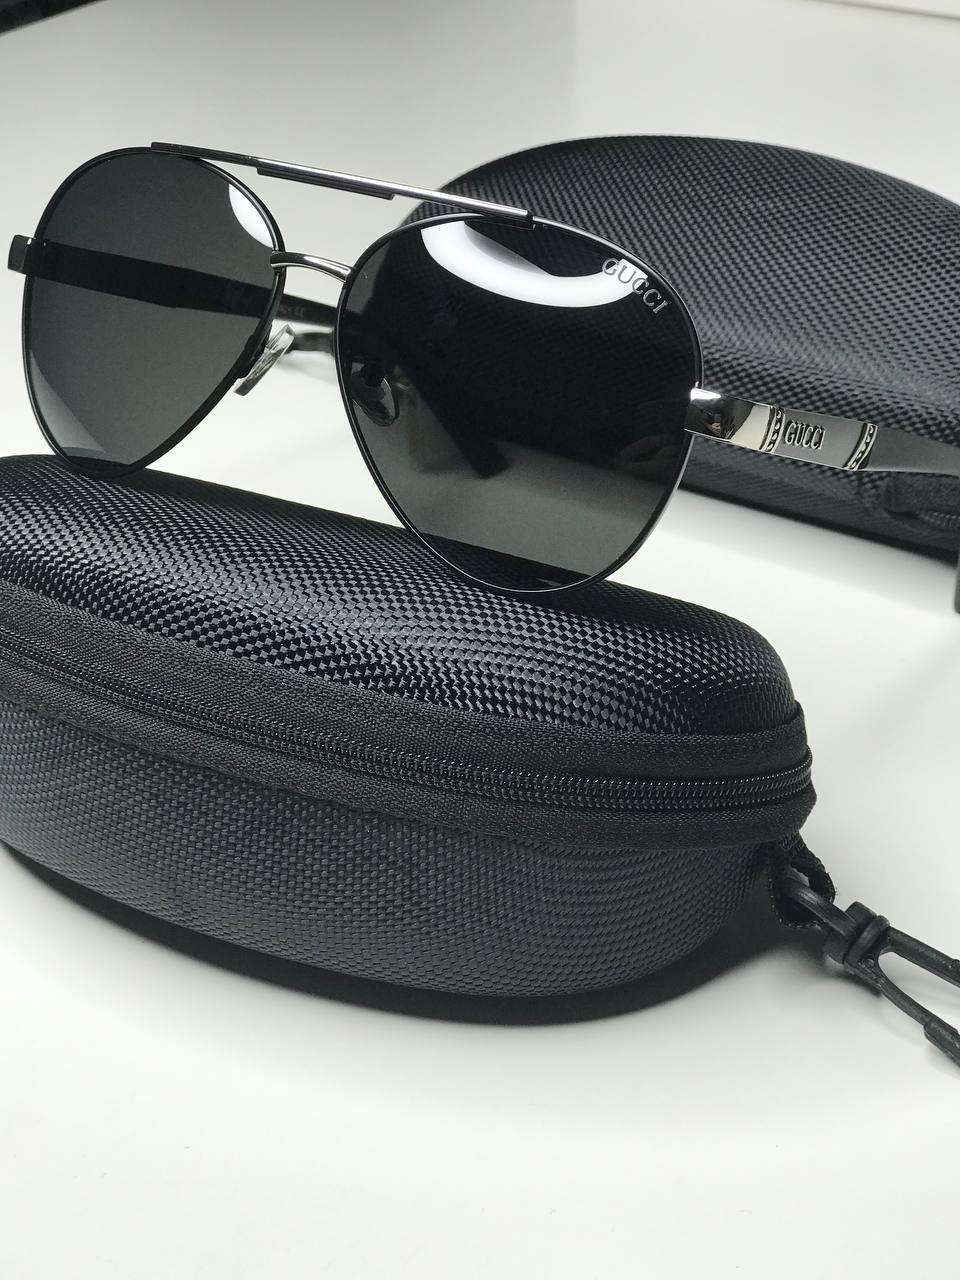 Сонцезахисні окуляри  GUCCI  Р 8007 Polarized, авіатори, окуляри гуччі